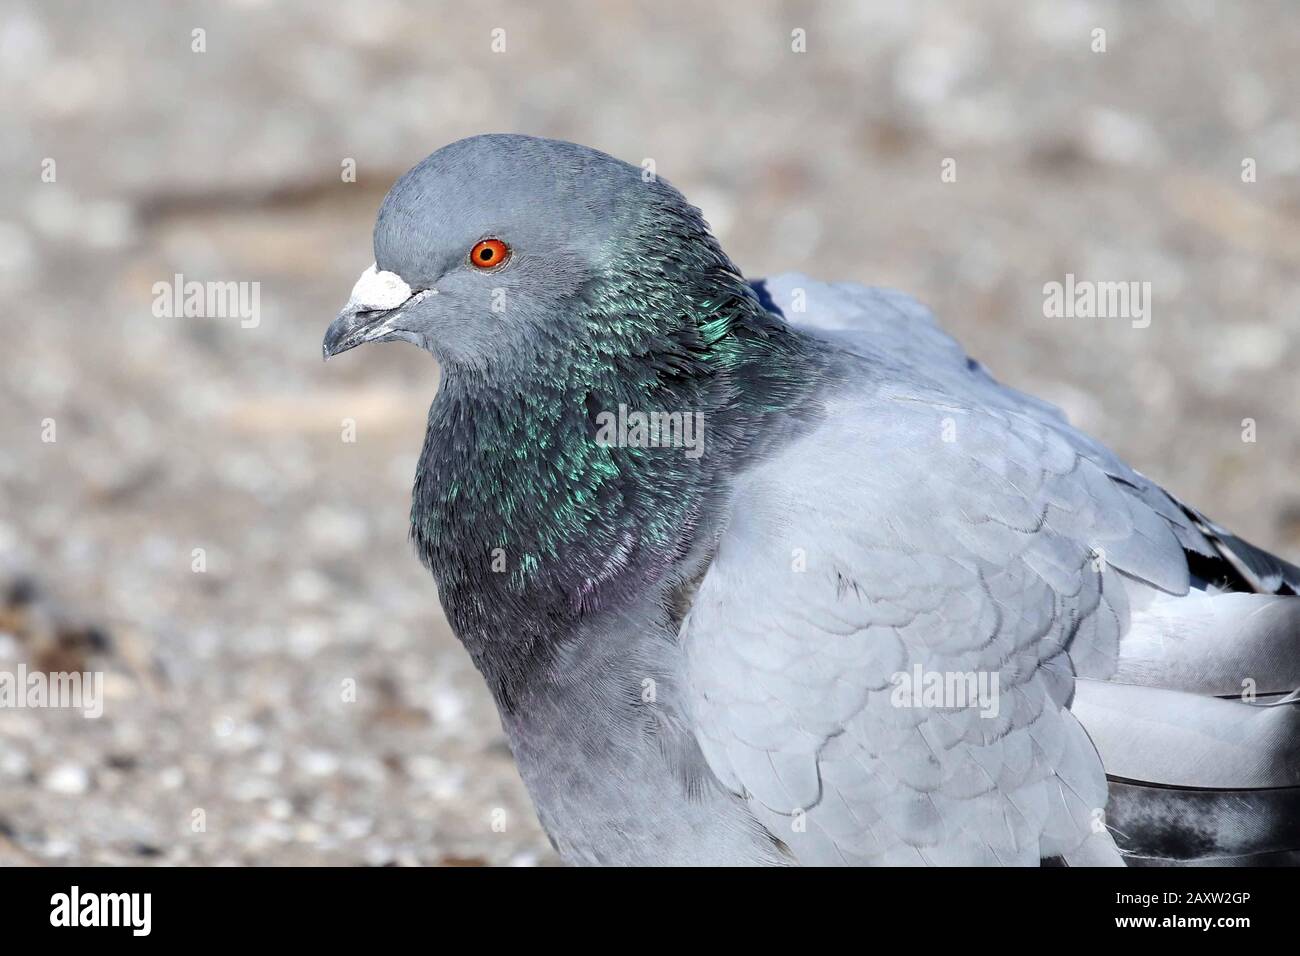 Rock pigeon closeup Stock Photo